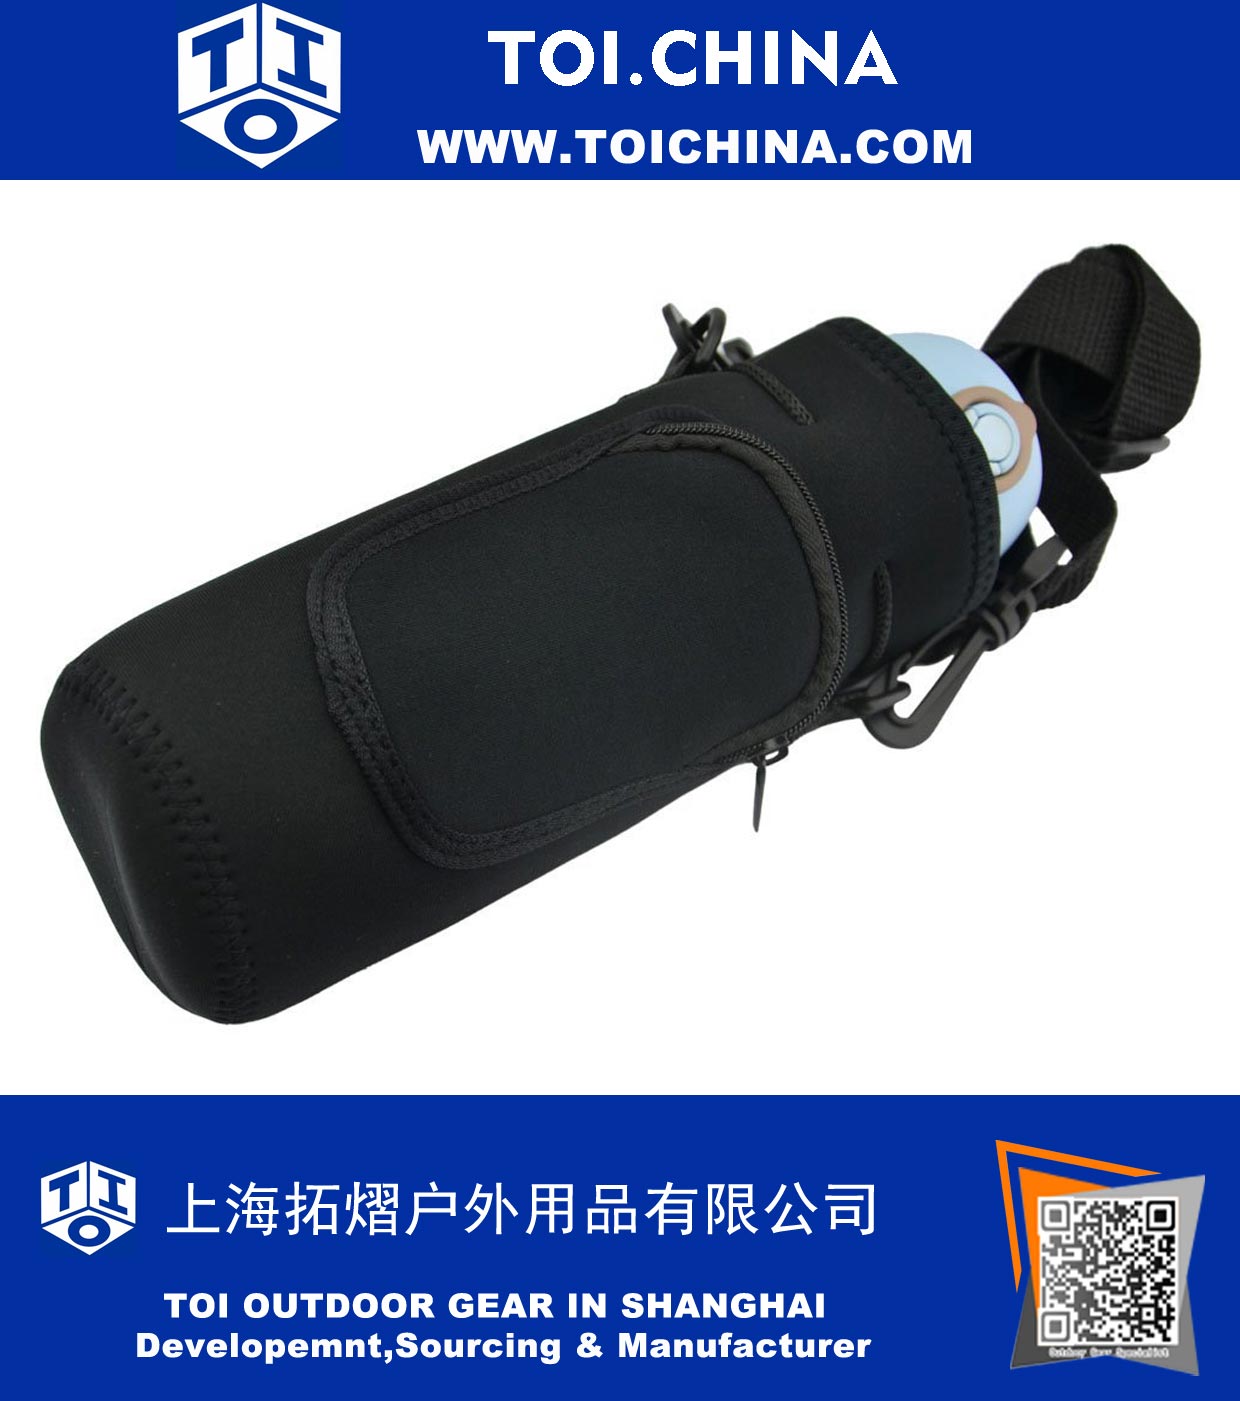 Refroidisseur d'isolation de sac à manches avec cordon en néoprène et bandoulière réglable